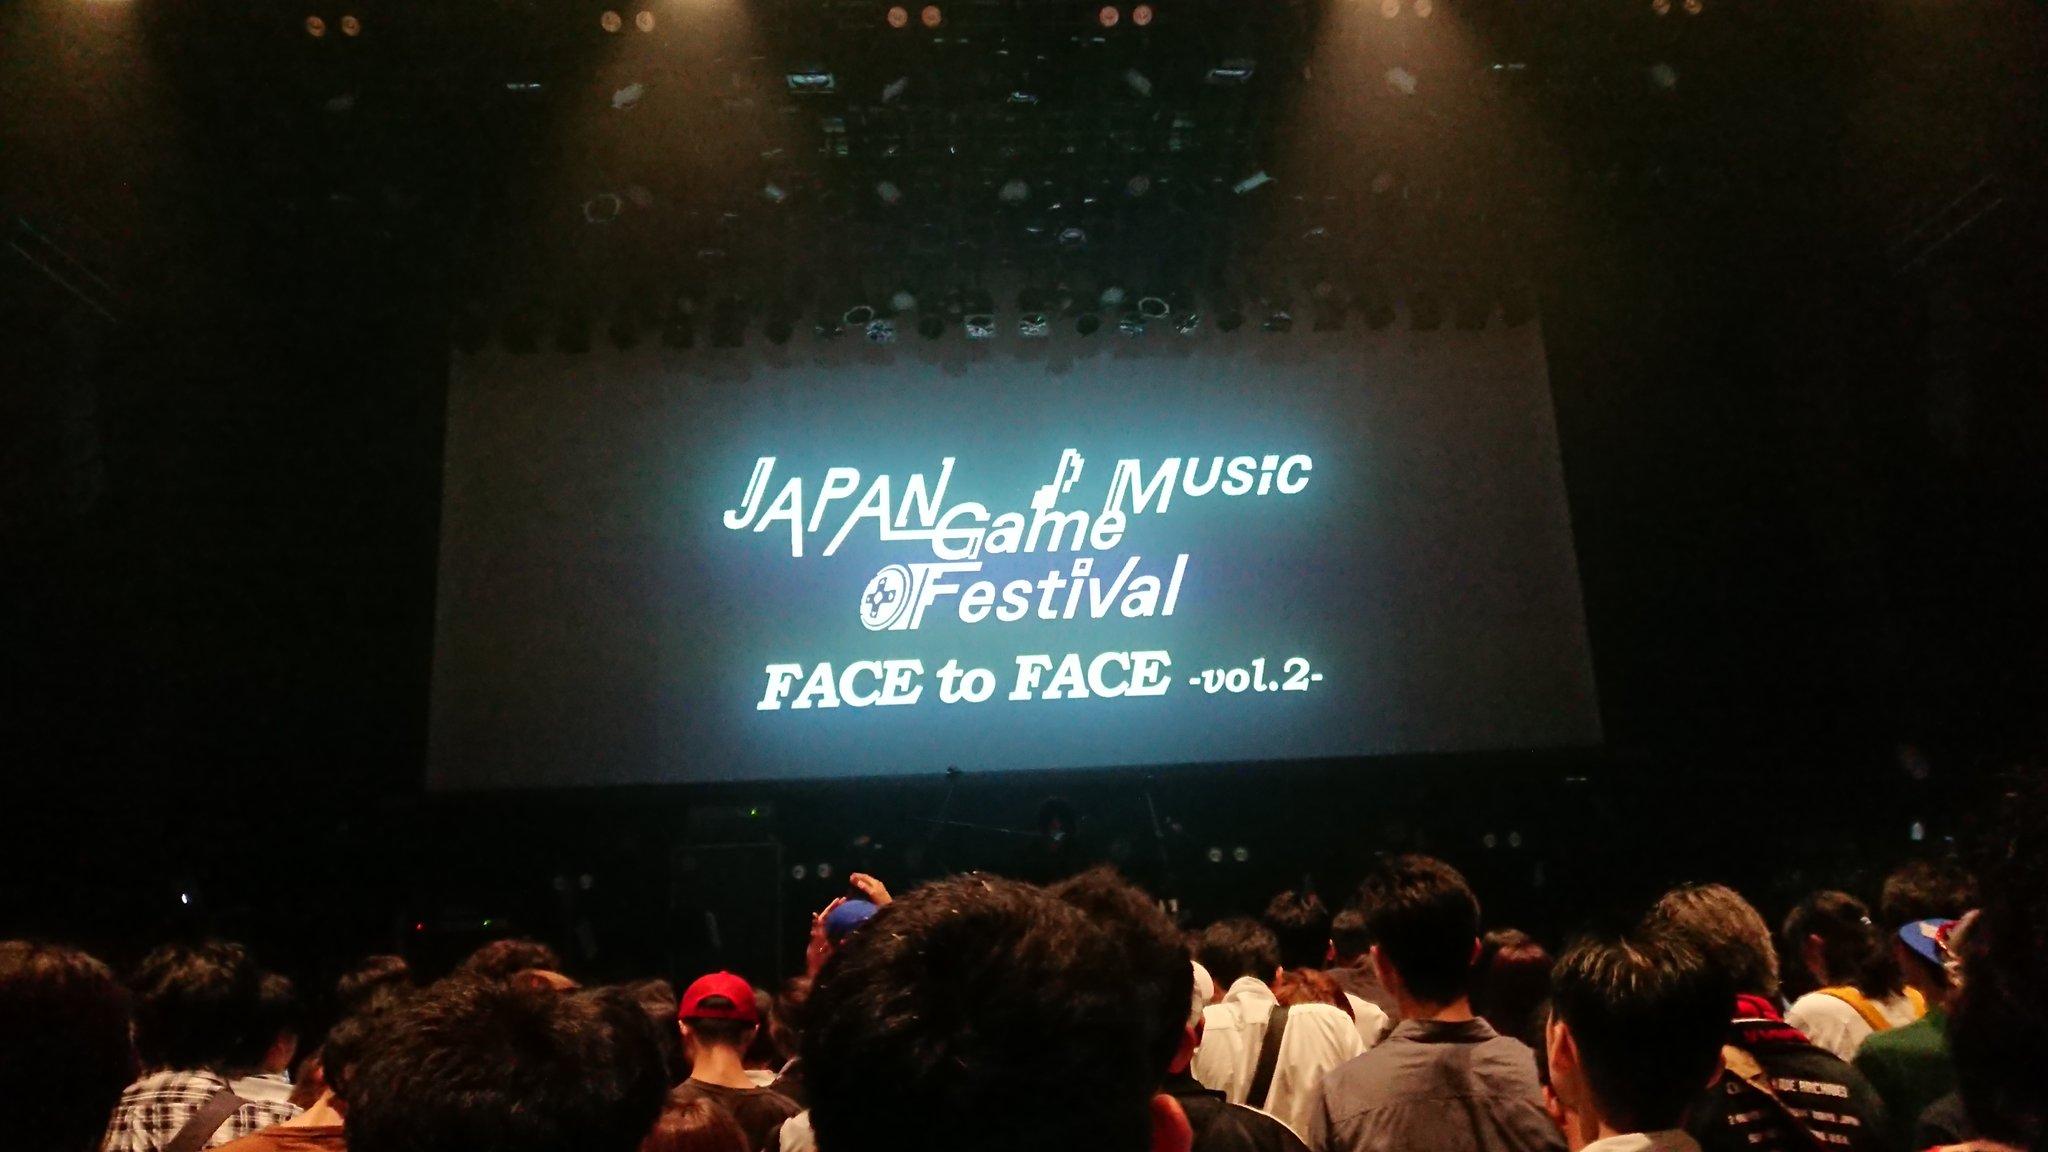 2019/06/22 JGMF Face to Face vol.2 at 渋谷ストリームホール